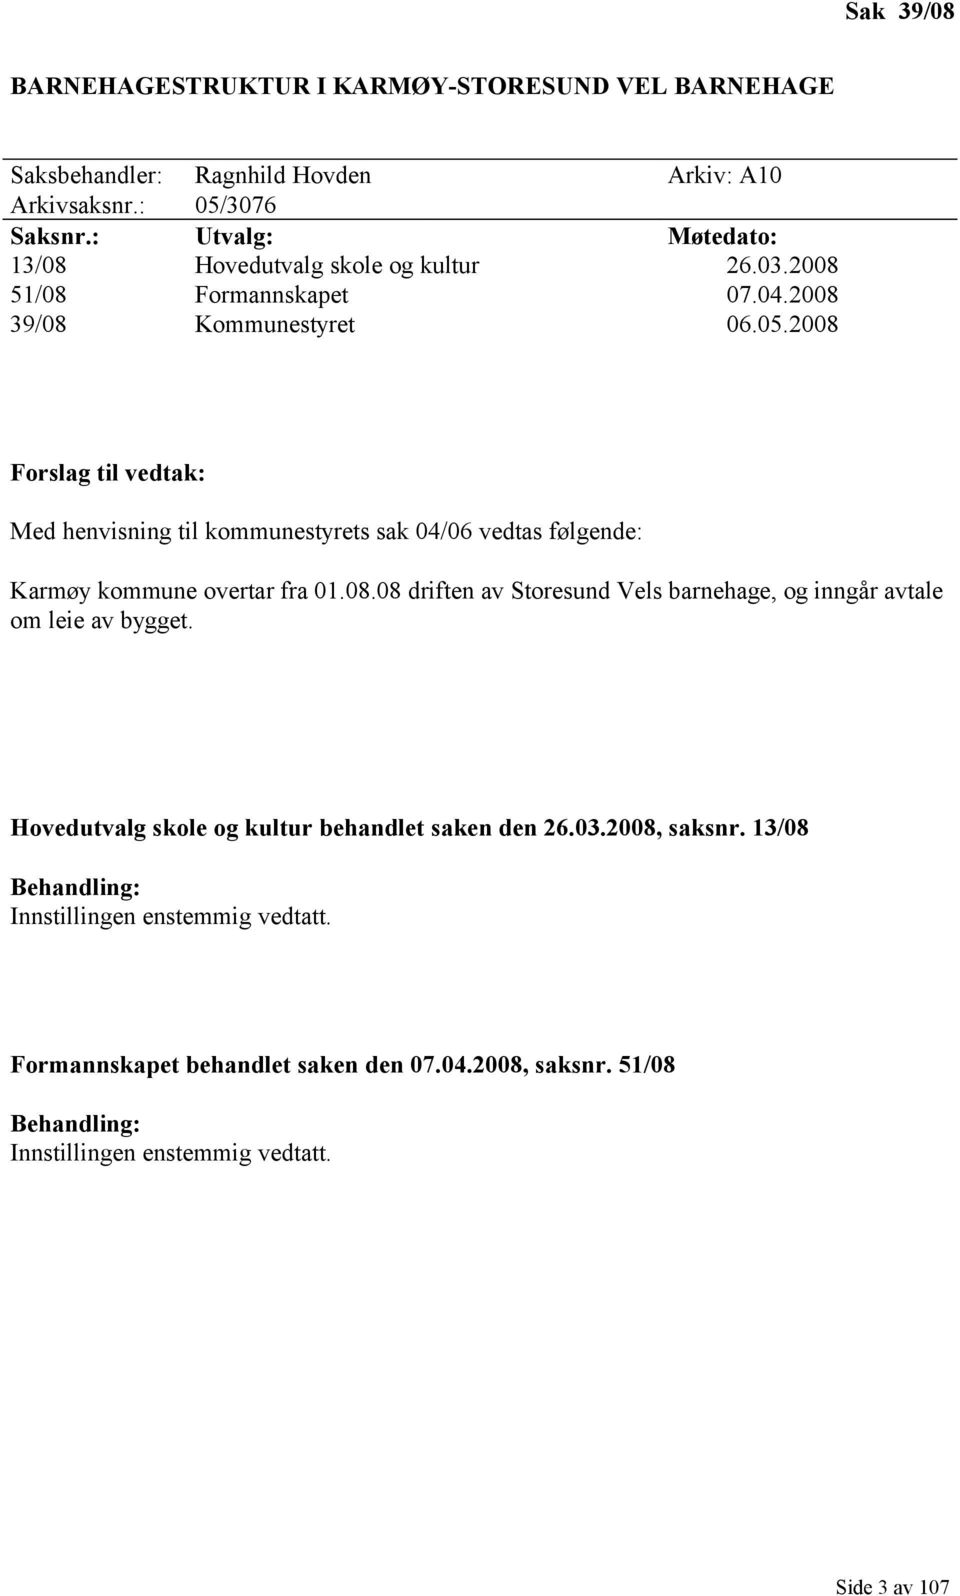 2008 Forslag til vedtak: Med henvisning til kommunestyrets sak 04/06 vedtas følgende: Karmøy kommune overtar fra 01.08.08 driften av Storesund Vels barnehage, og inngår avtale om leie av bygget.